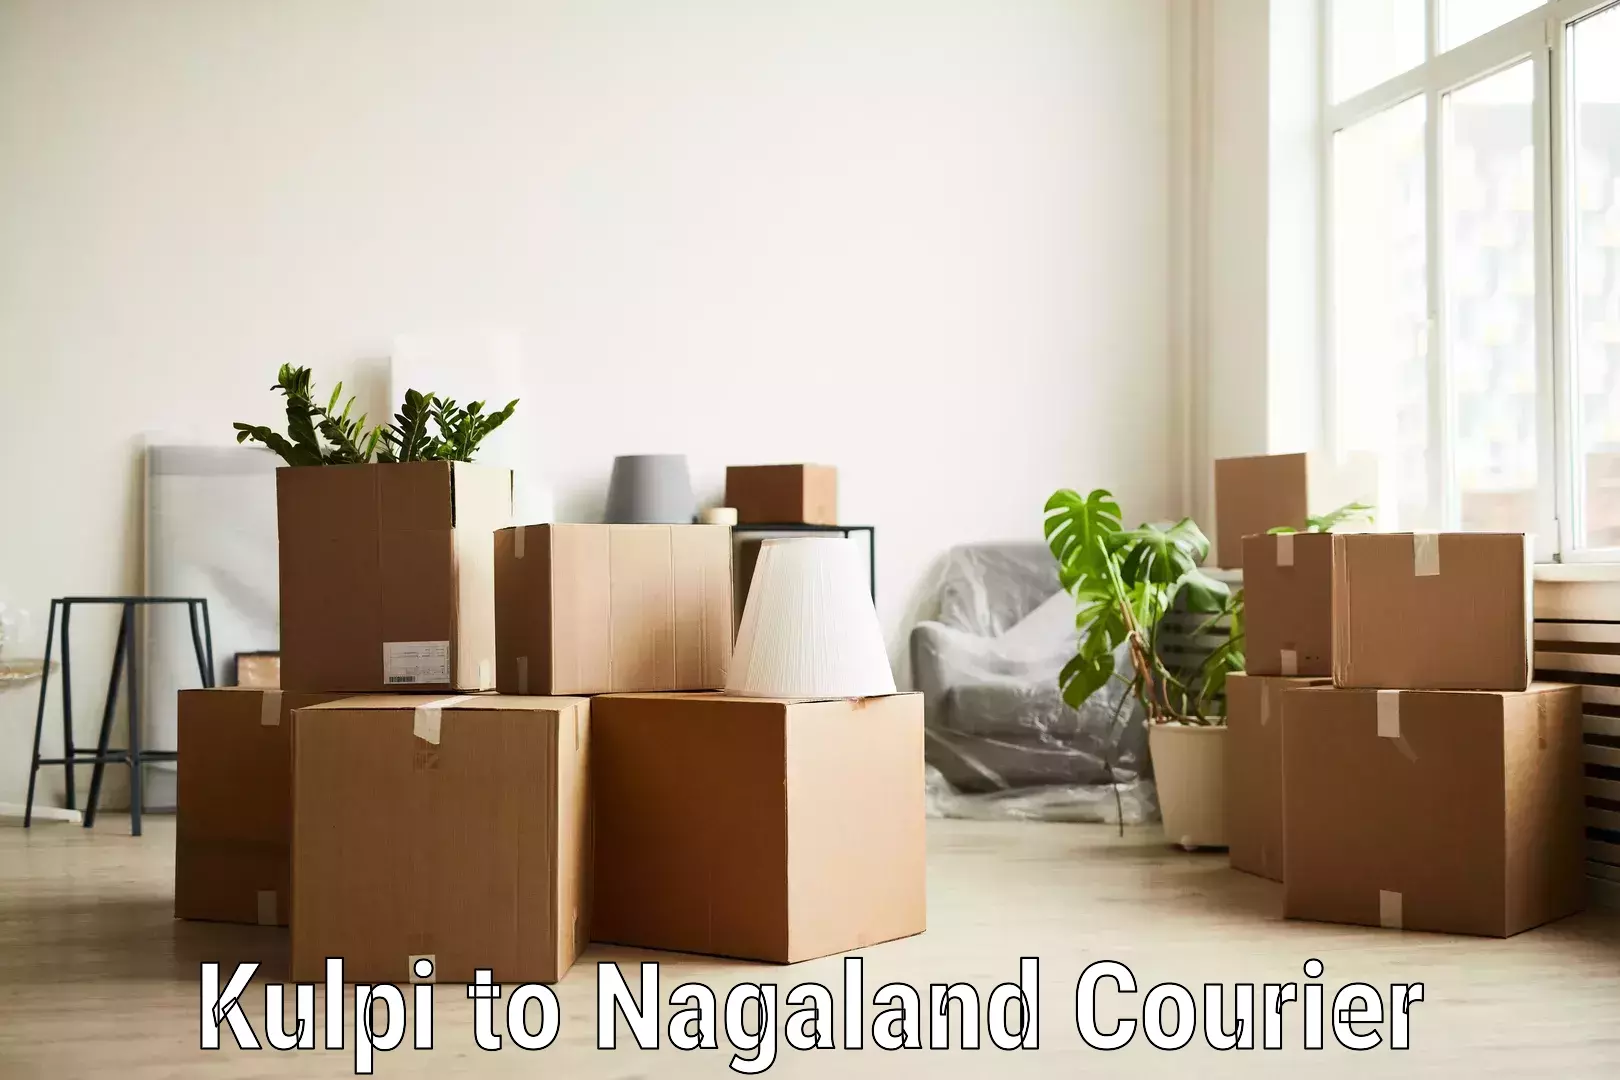 Efficient parcel delivery Kulpi to NIT Nagaland